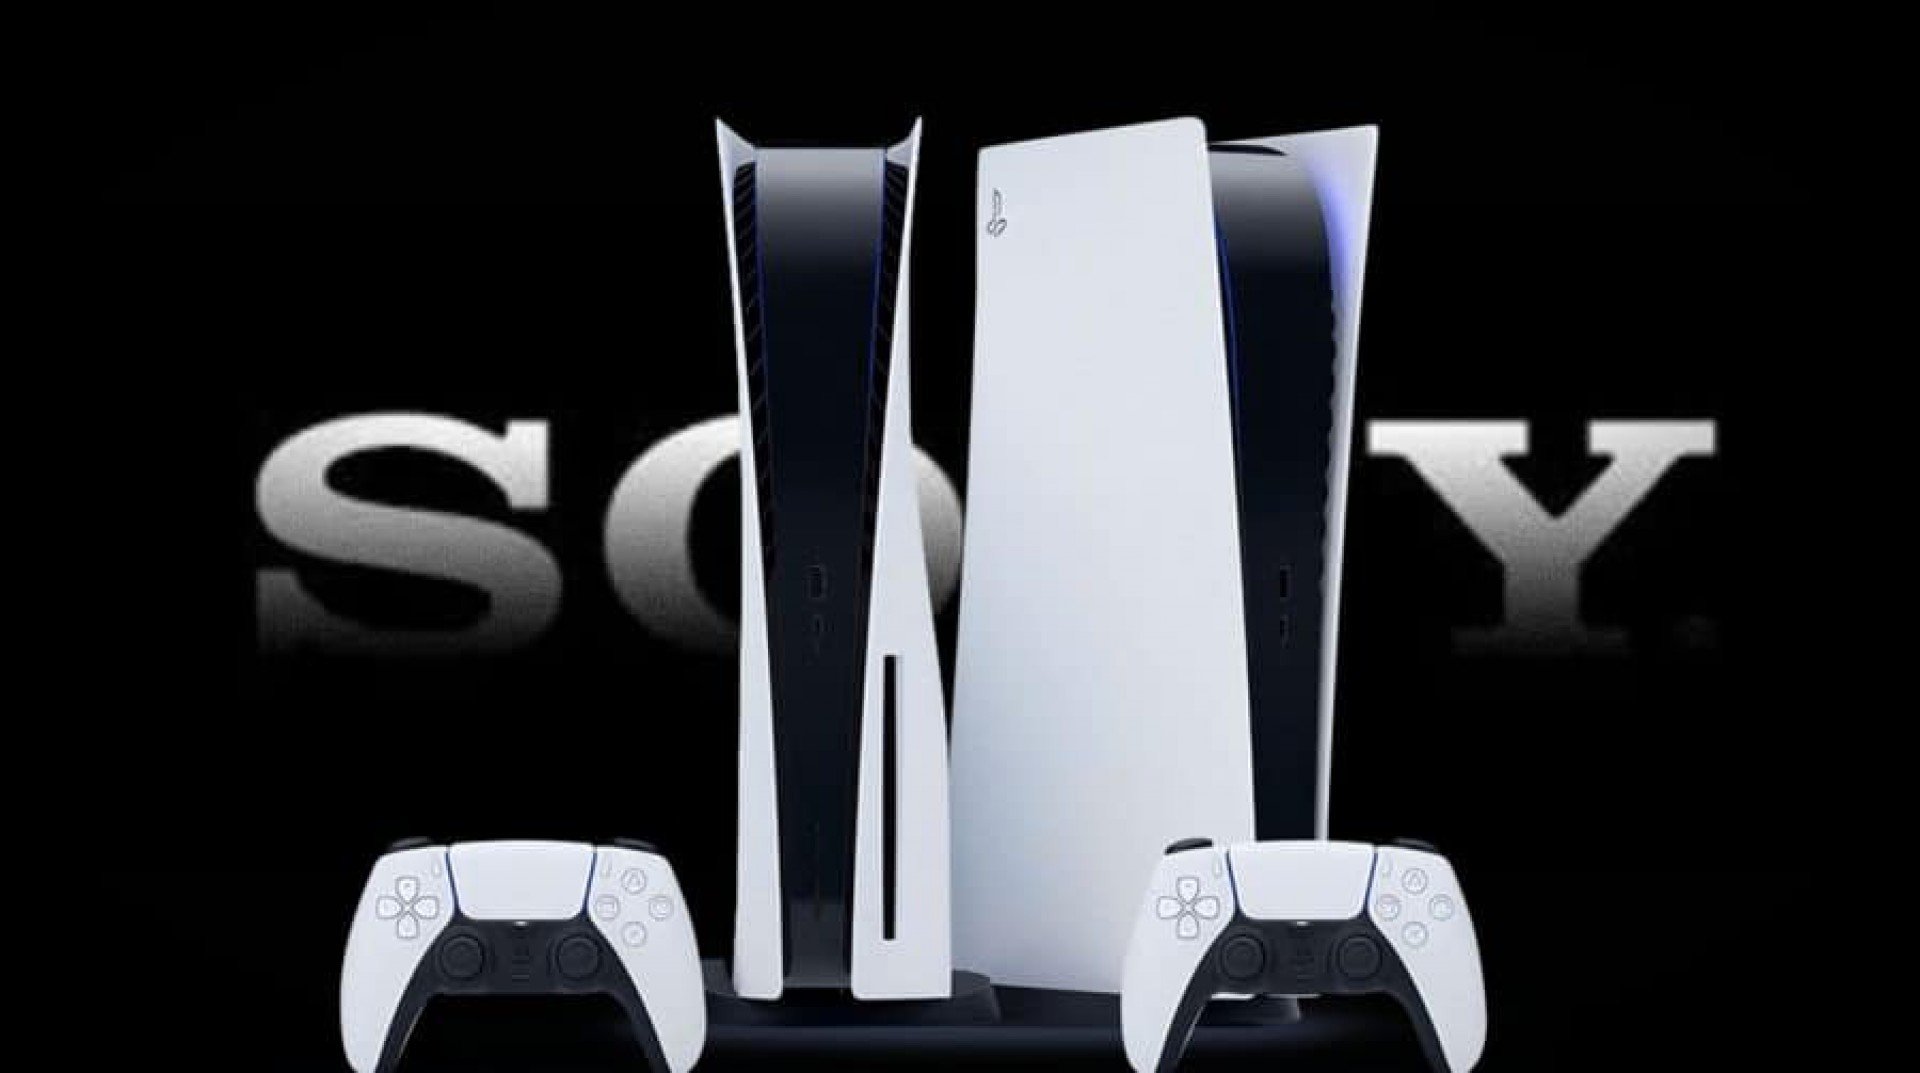 PlayStation 5: Brasil fica fora da lista de aumento de preço anunciada pela  Sony Jornal MEIA HORA - Geral